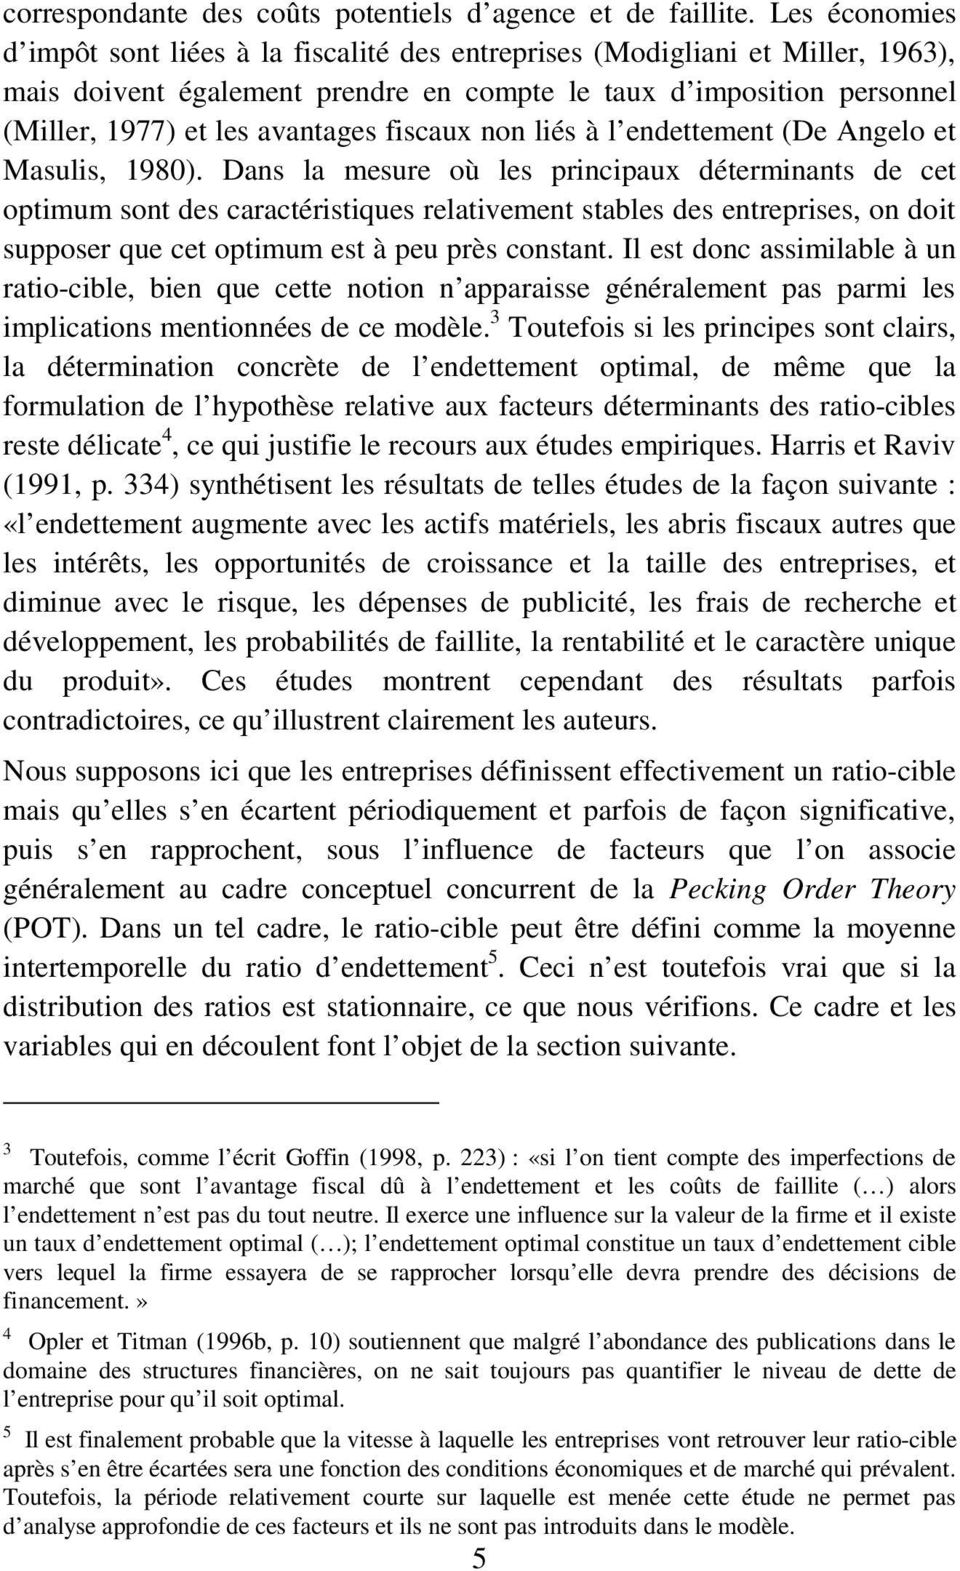 l endettement (De Angelo et Masuls, 1980).